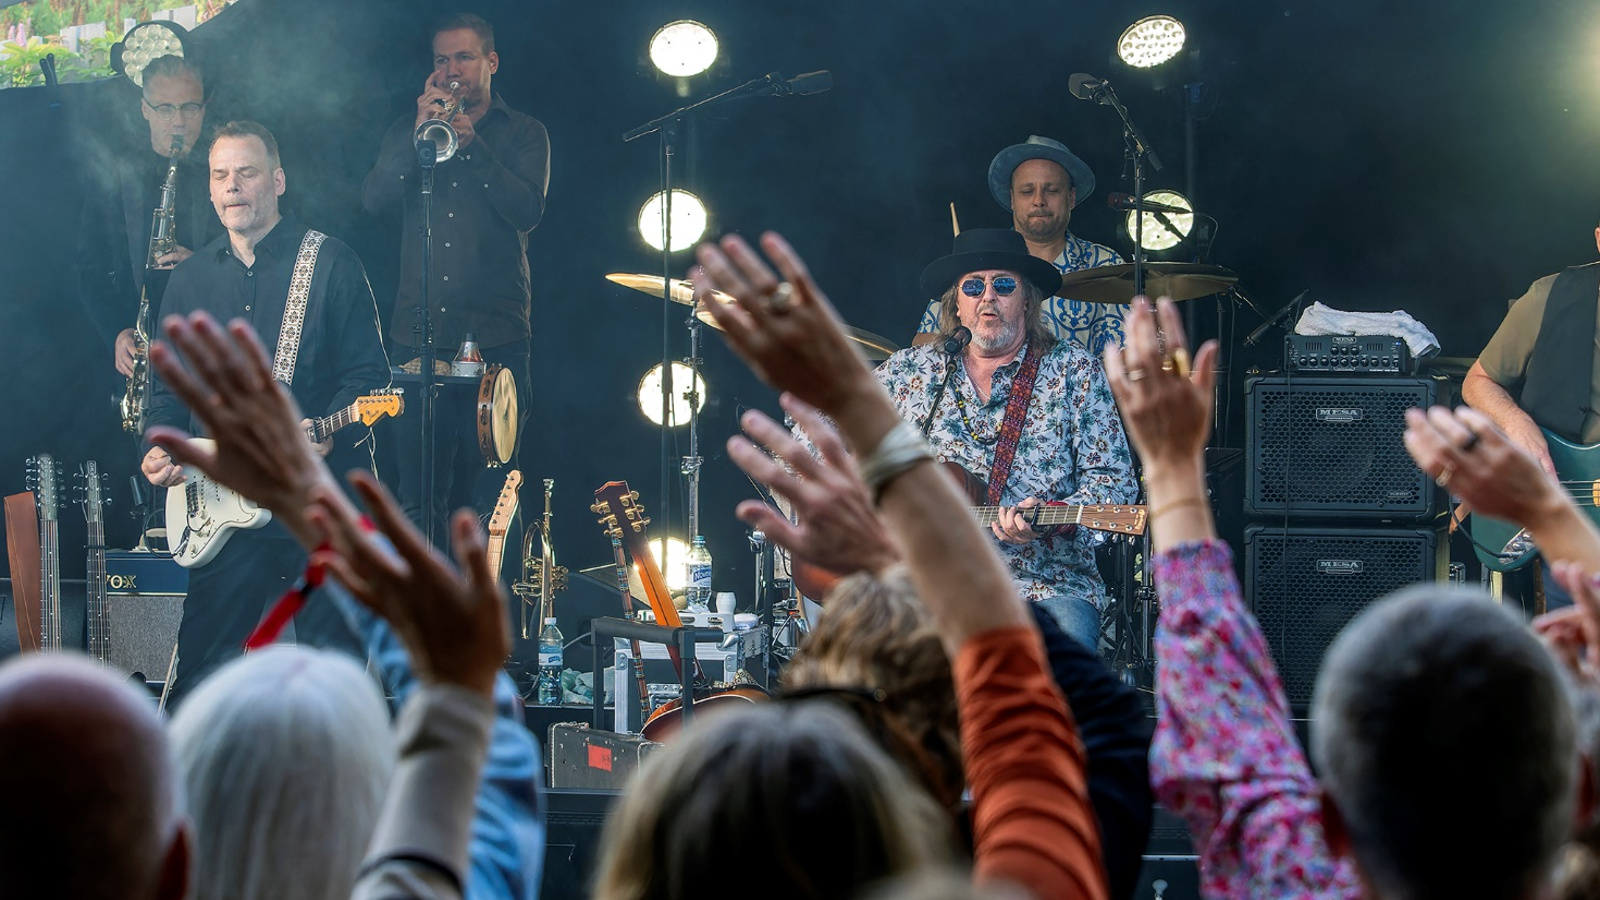 Kuvassa on Hector esiintymässä Salmelan lavalla ja taustalla on bändiä, jossa on kitaristi ja puhaltajia soittamassa.  Edessä on yleisöä kädet pystyssä ja näkyy päälakia. 